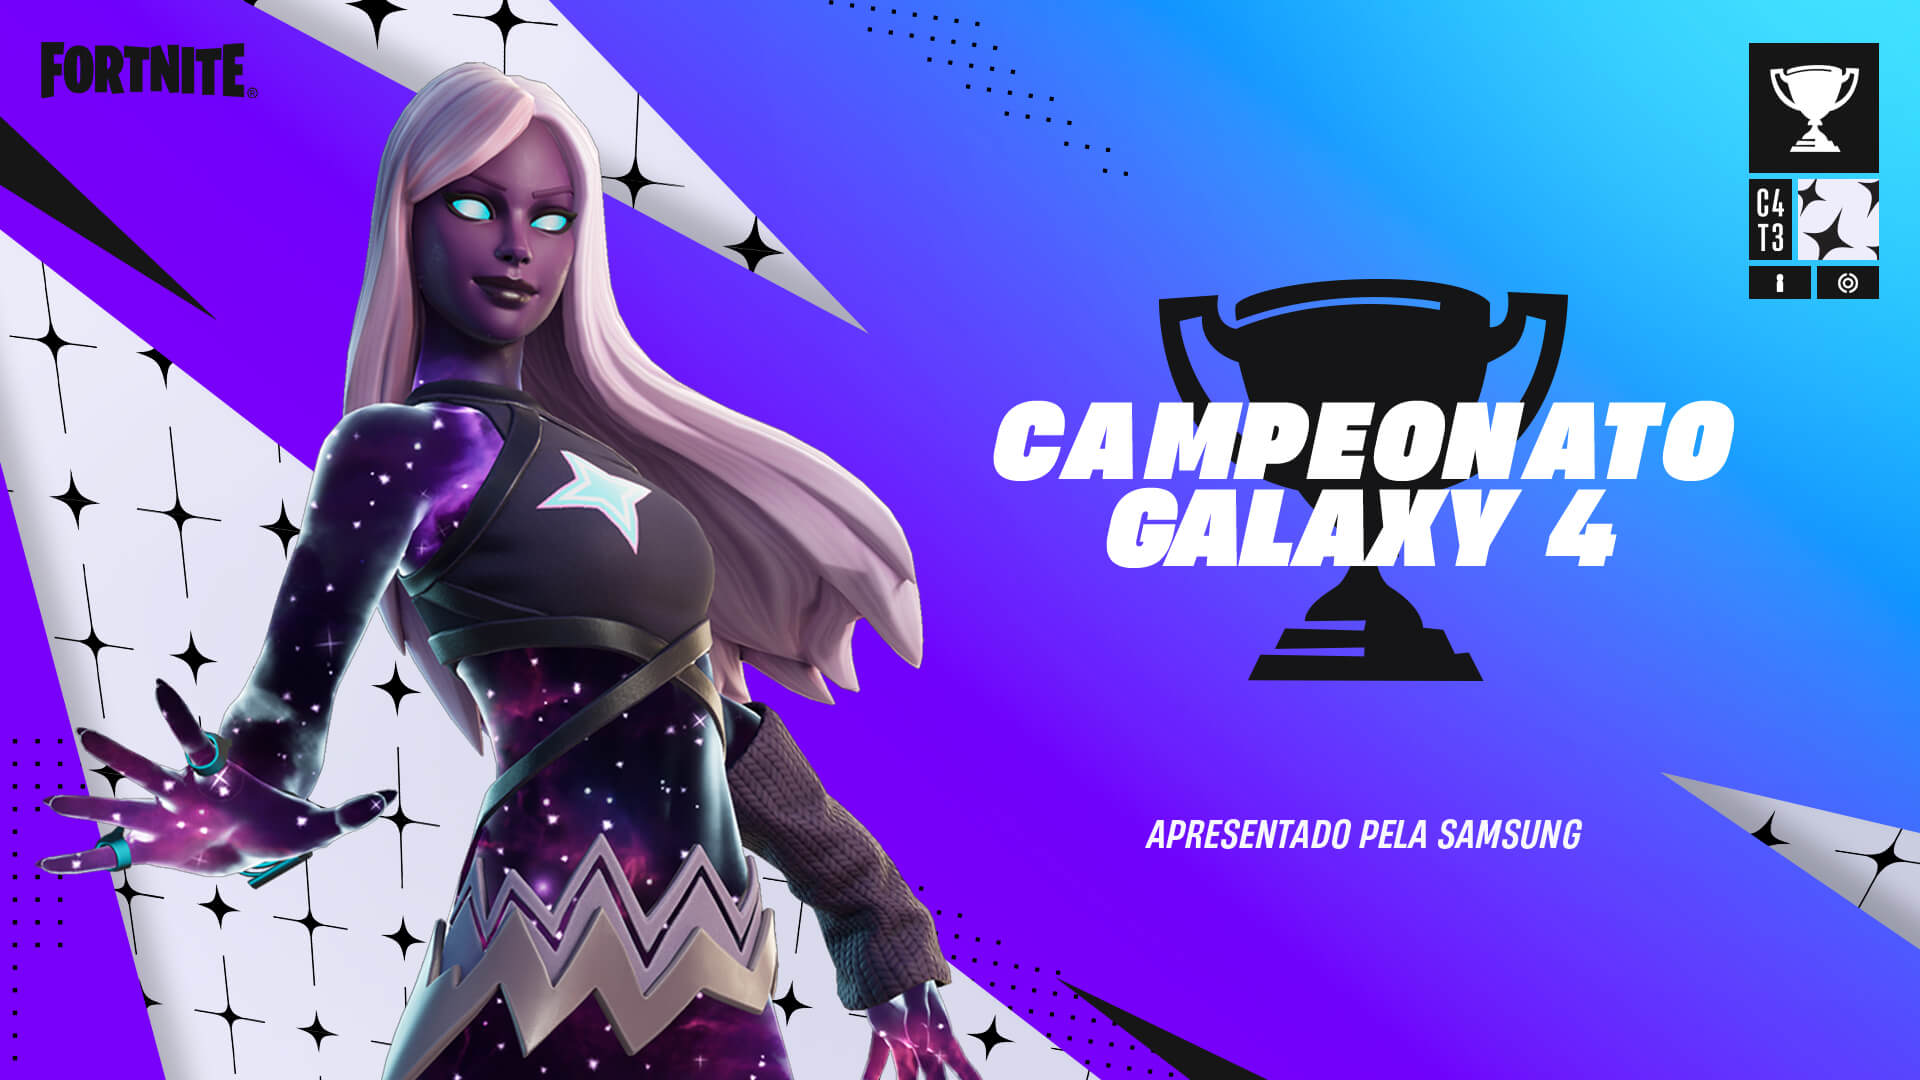 Campeonato Galaxy 4 do Fortnite começa em 29 de julho e vai até 30 de julho image